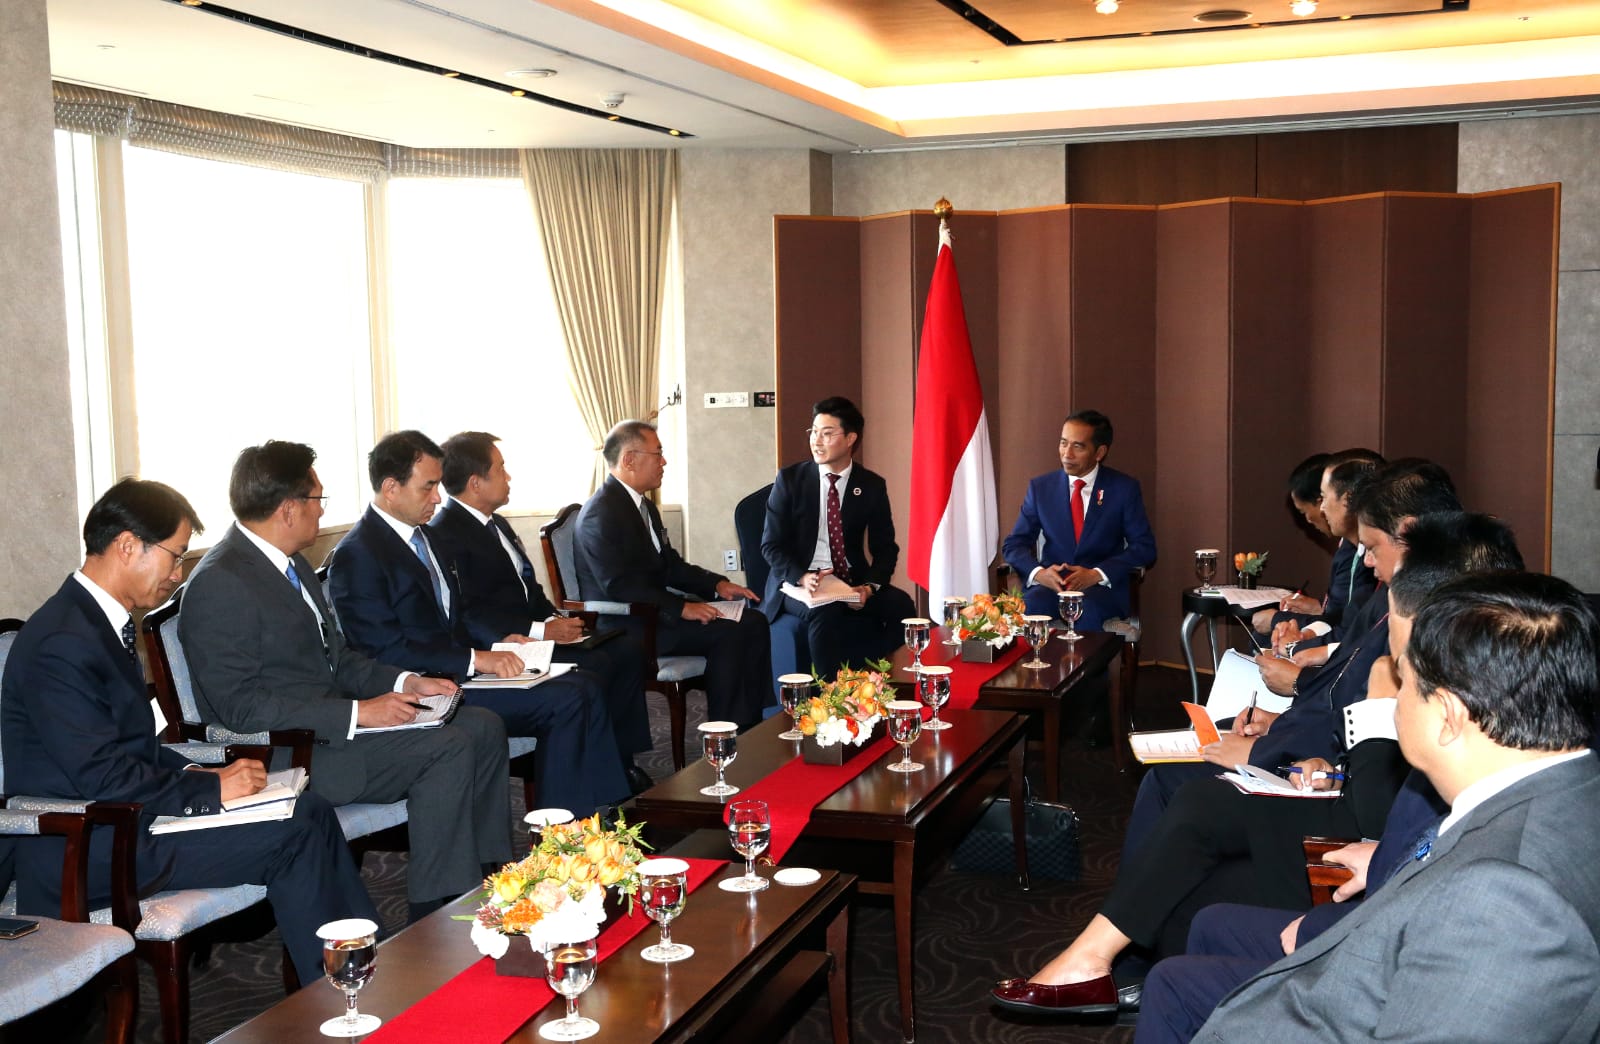 Berita, Pertemuan Jokowi dan Korsel: Hyundai Tanda Tangani MoU Dengan Pemerintah Indonesia, Mau Bangun Pabrik!